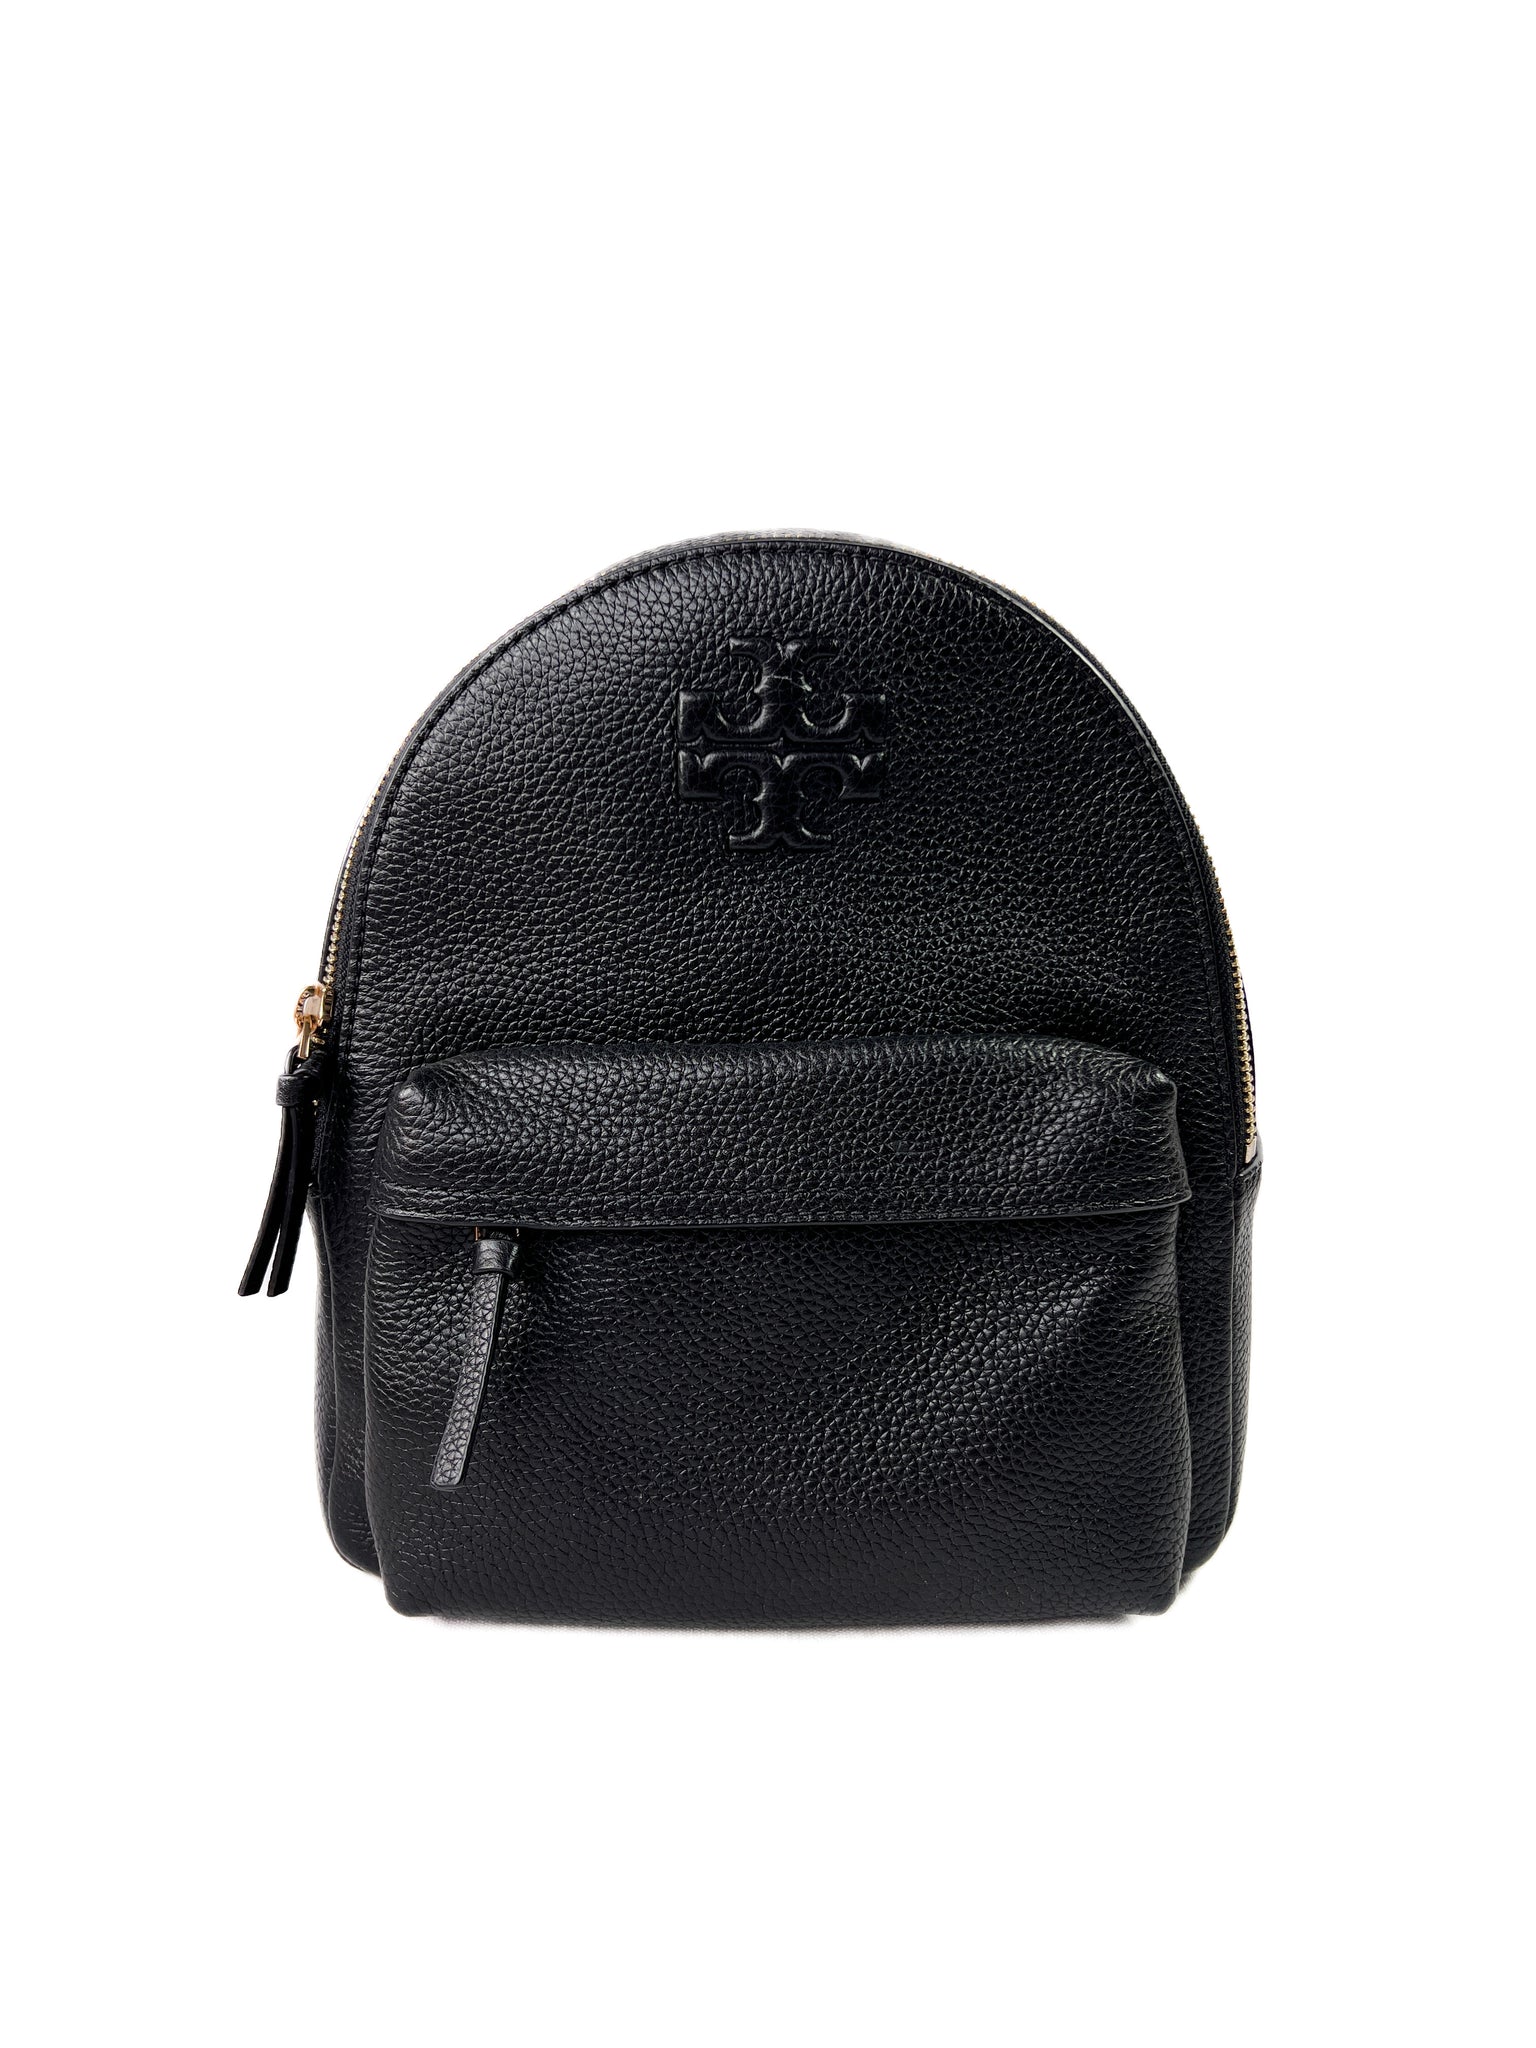 Tory Burch Women's Thea Mini Backpack Black Algeria